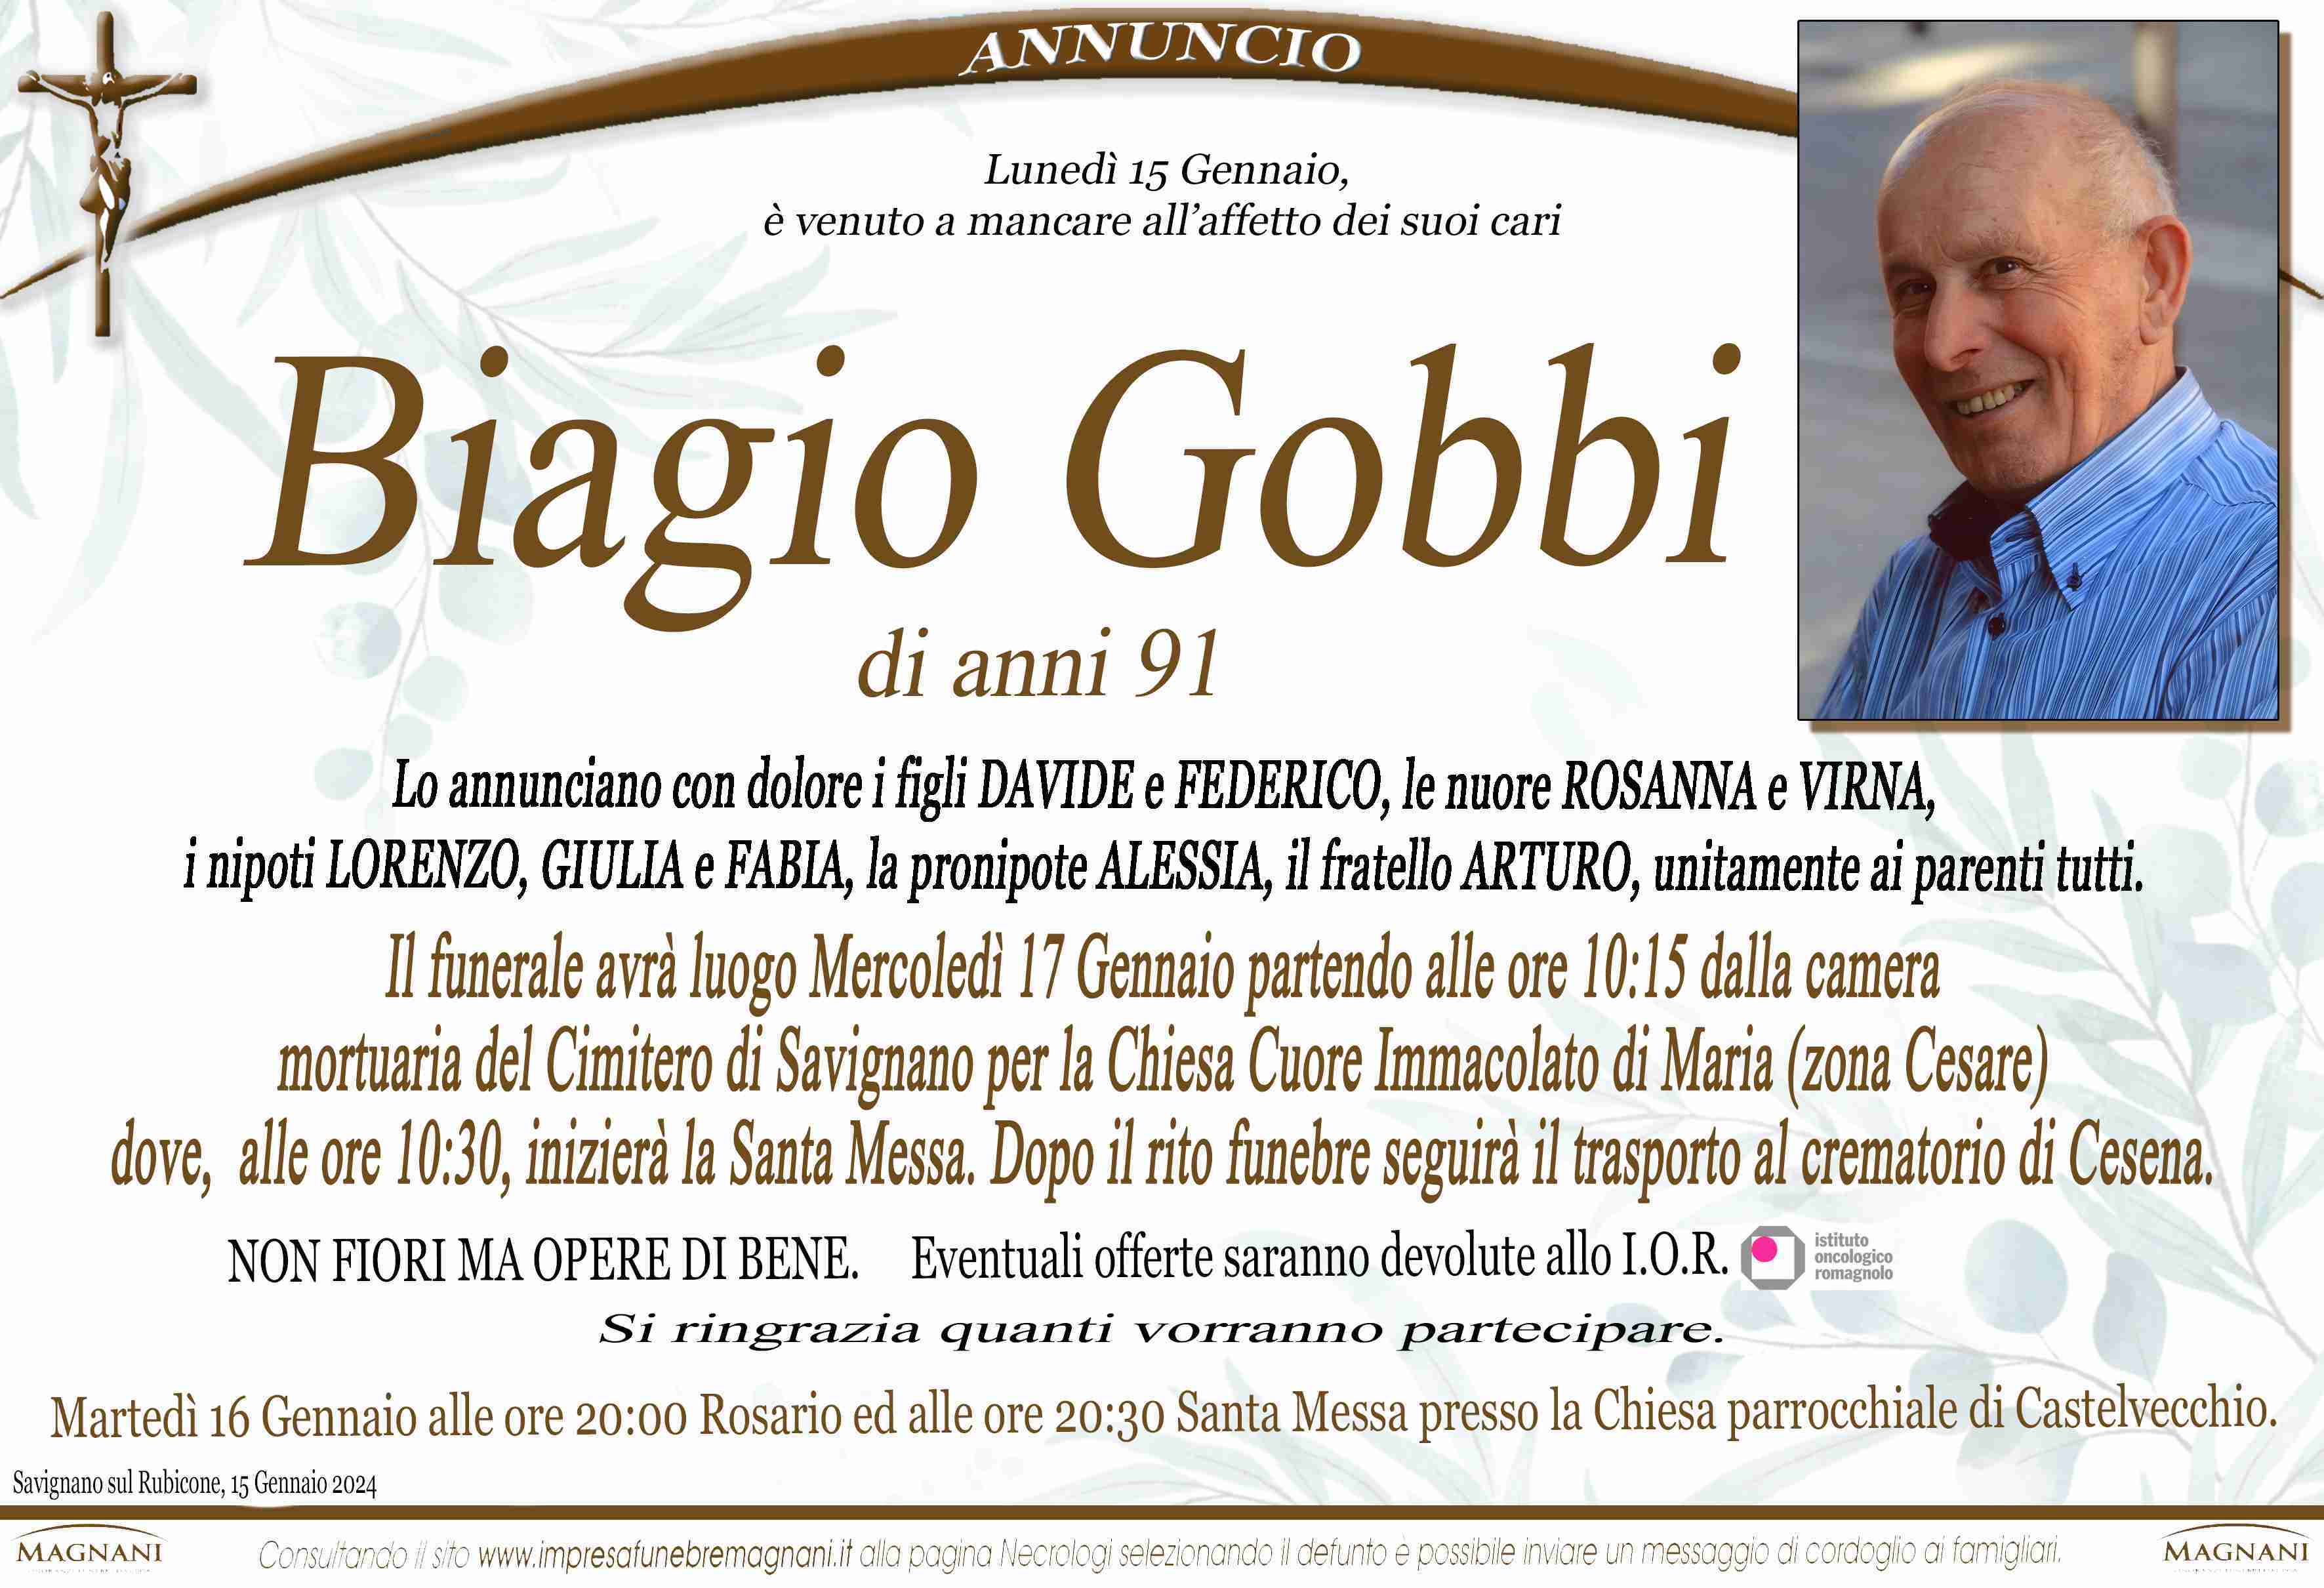 Biagio Gobbi